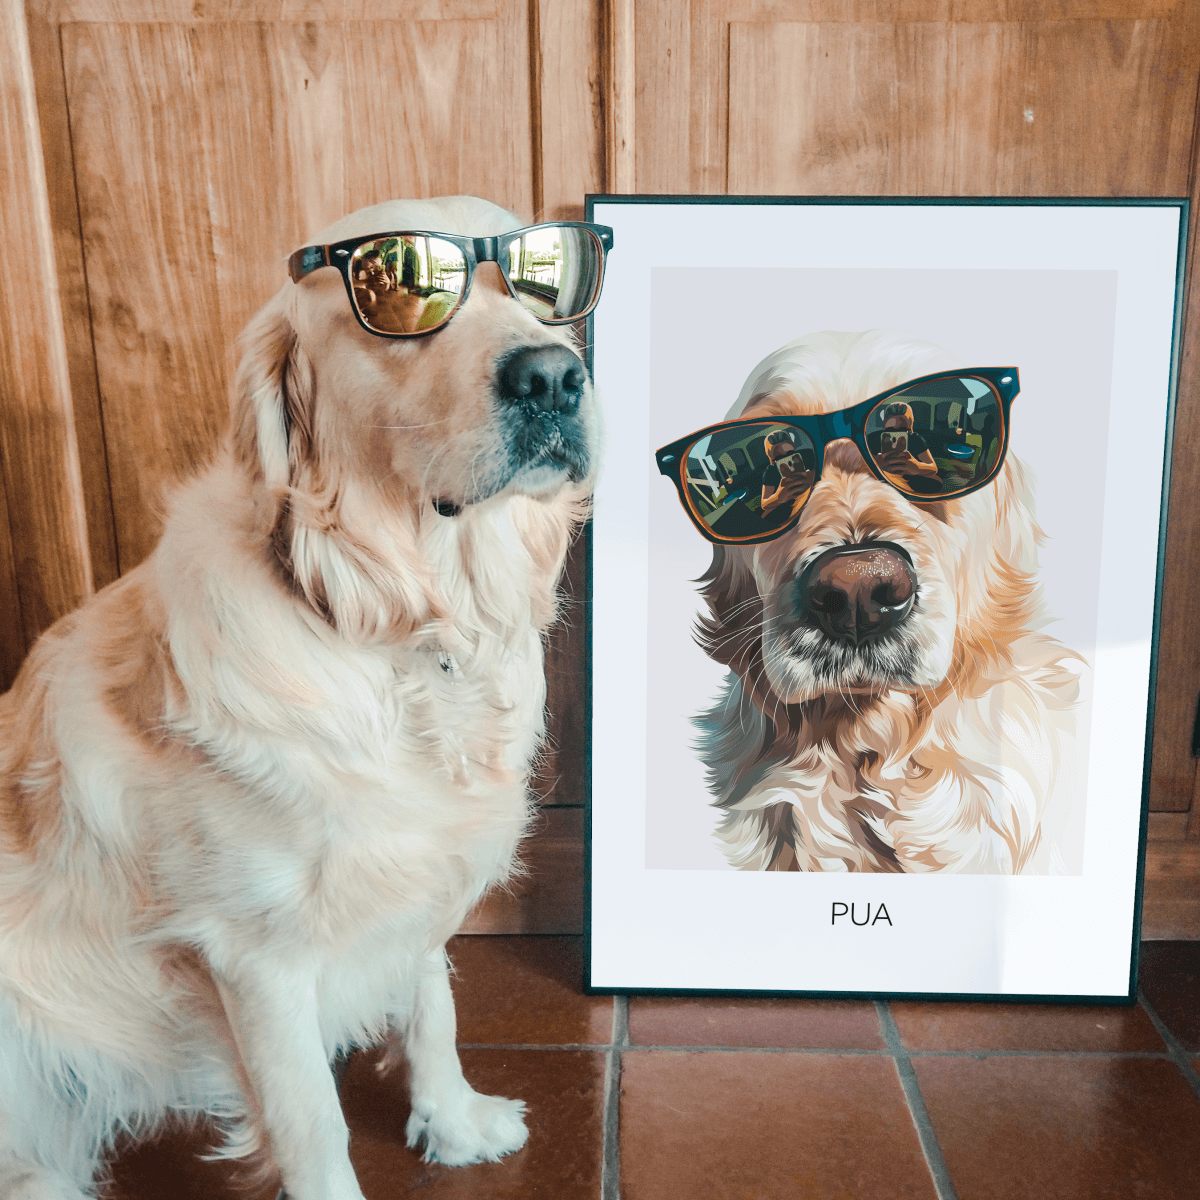 lavendel onpeilbaar Competitief Maak Je Eigen Pet Frame - Realistisch - Een kunstwerk van jouw eigen  huisdier | My Pet Frame – My Pet Frame NL